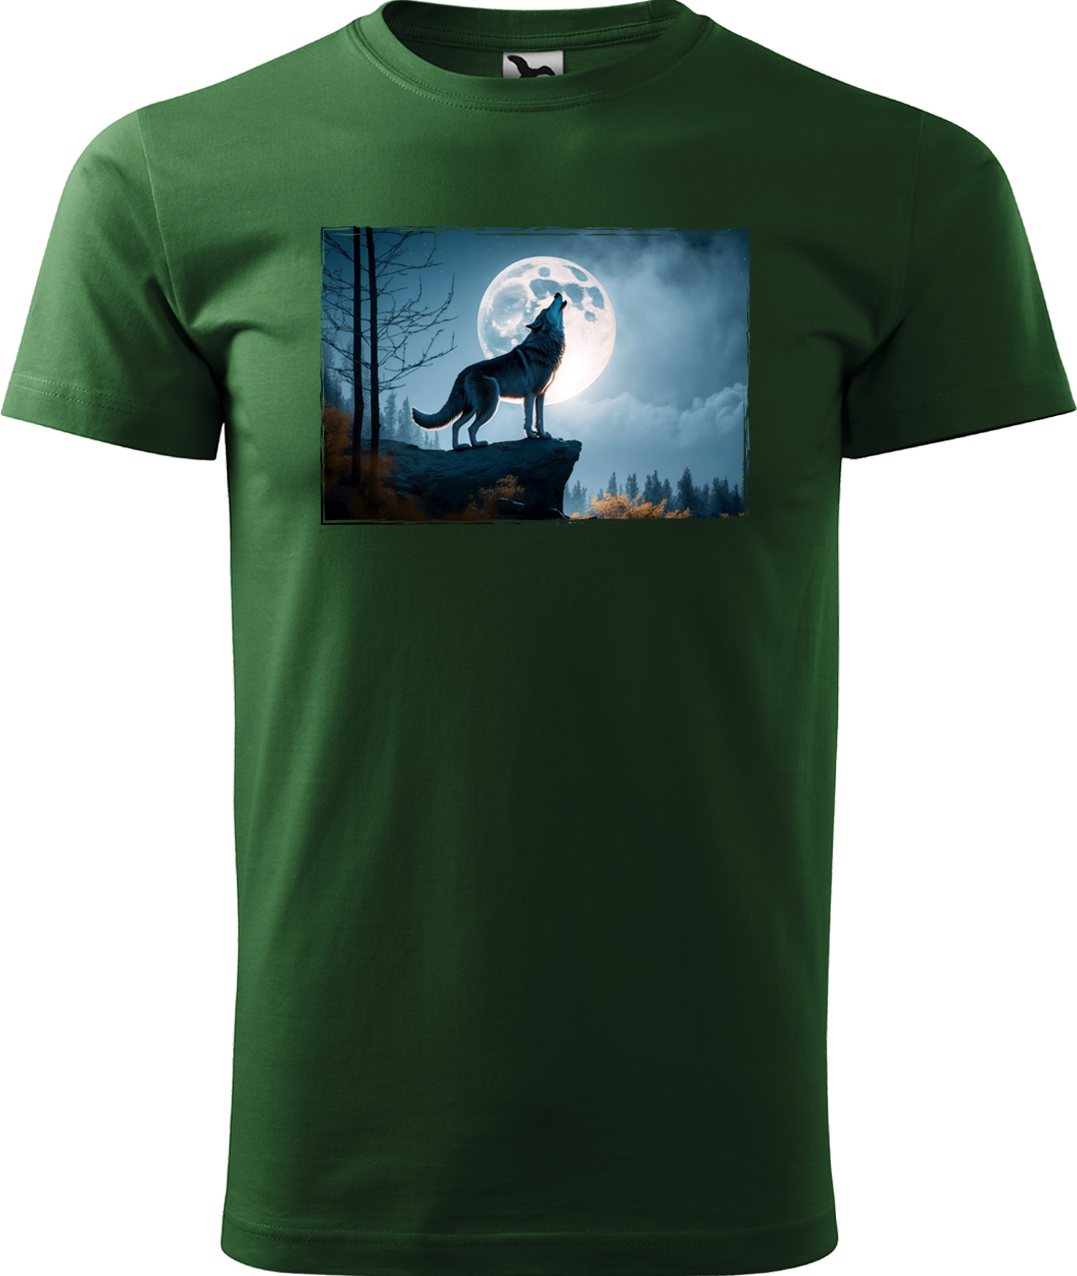 Pánské tričko s vlkem - Vyjící vlk Velikost: M, Barva: Lahvově zelená (06)